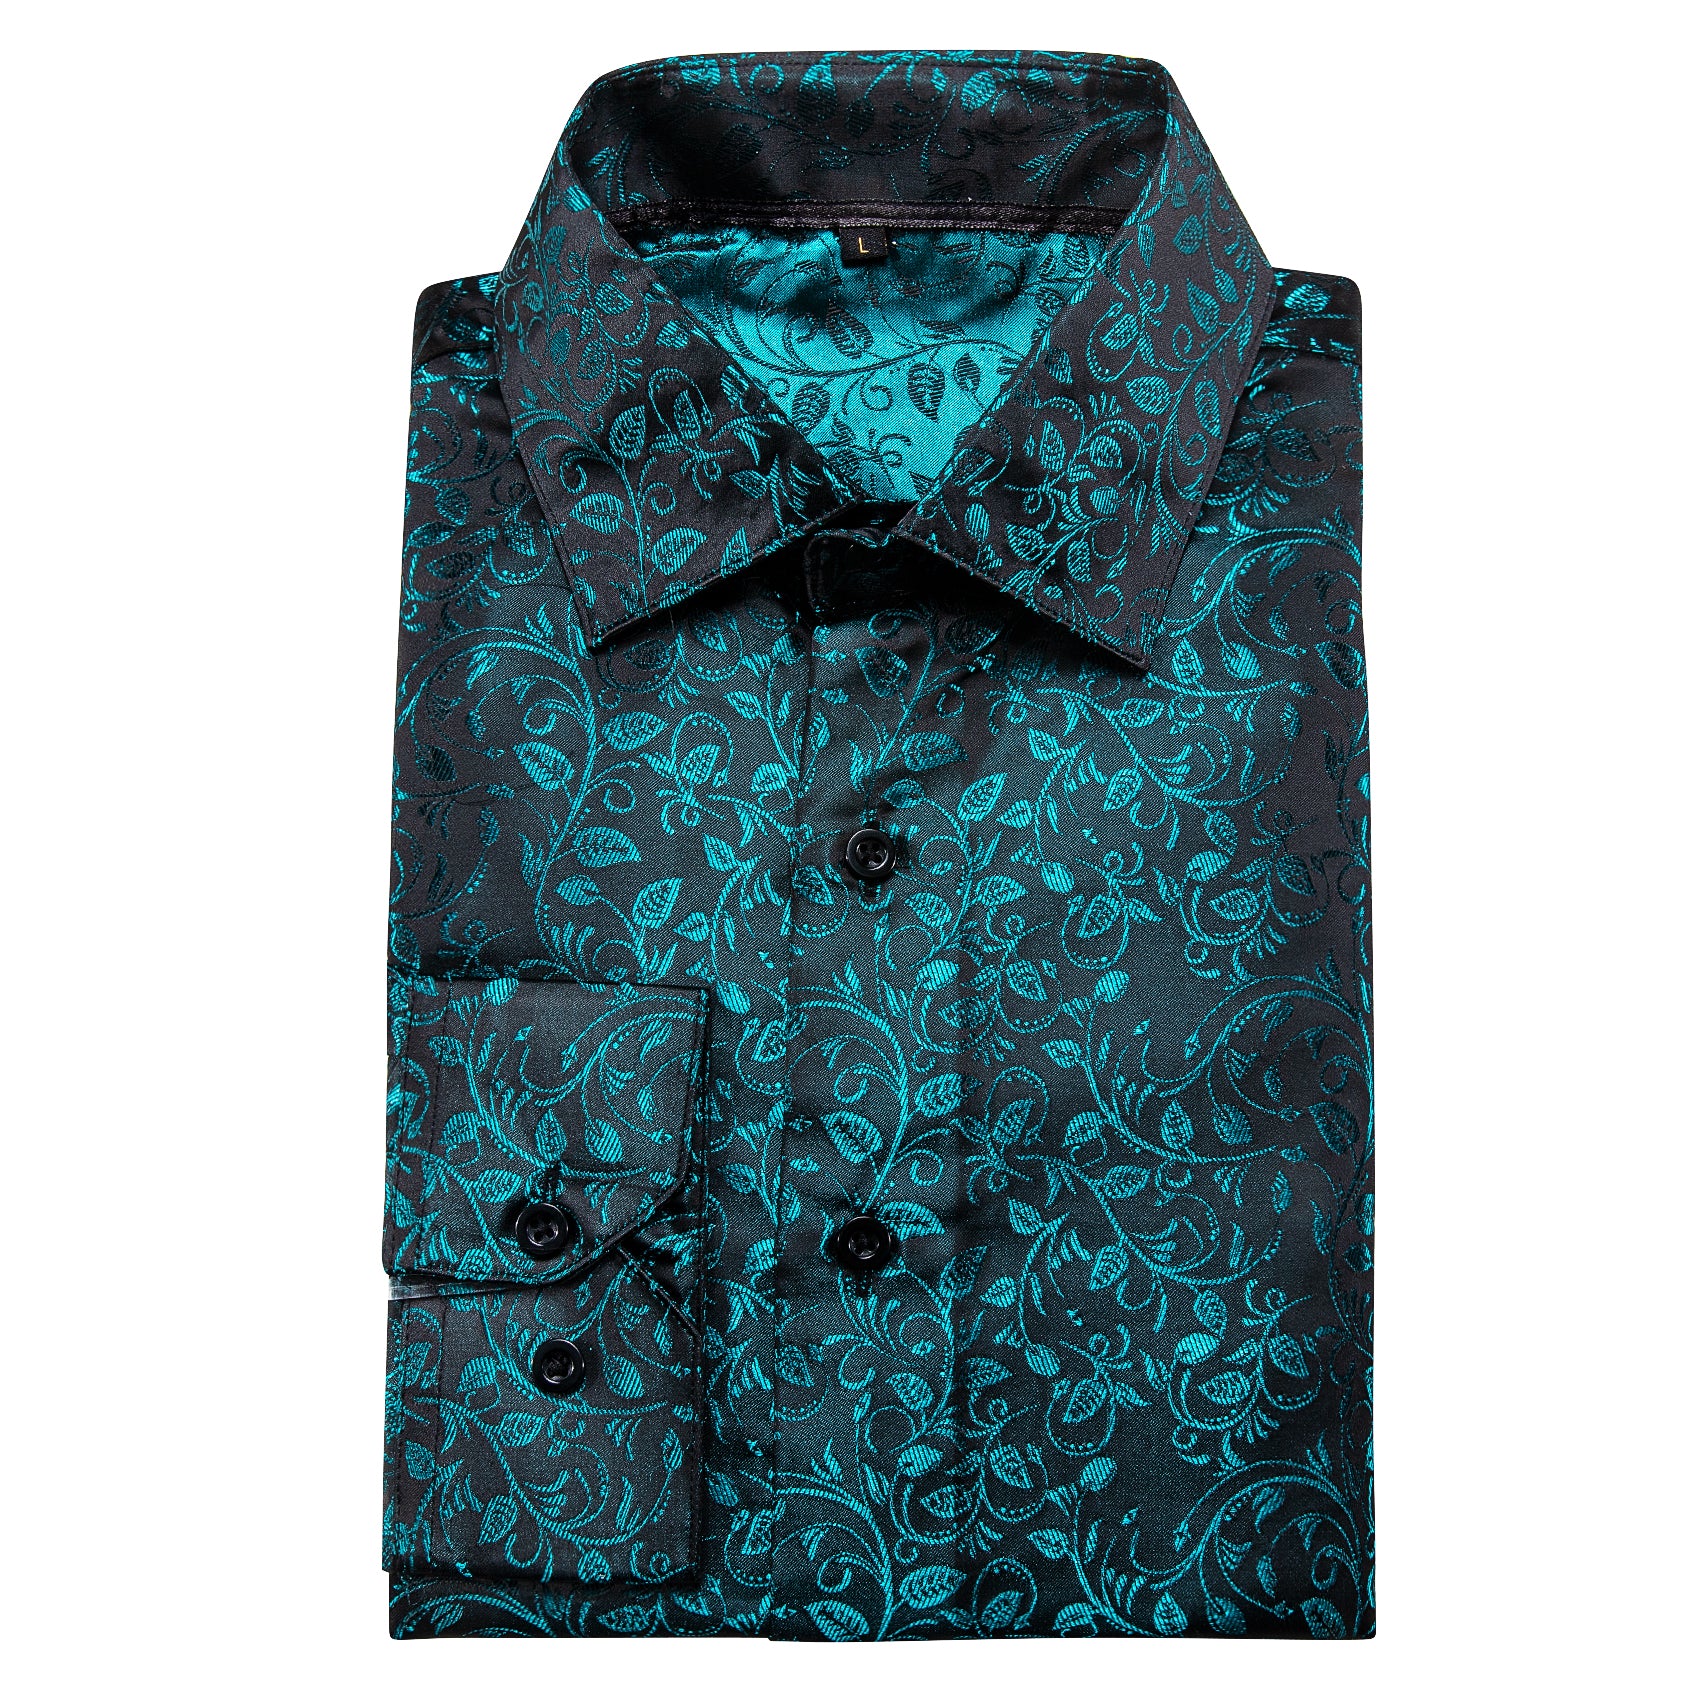 Barry.wang Blue Black Floral Silk Shirt